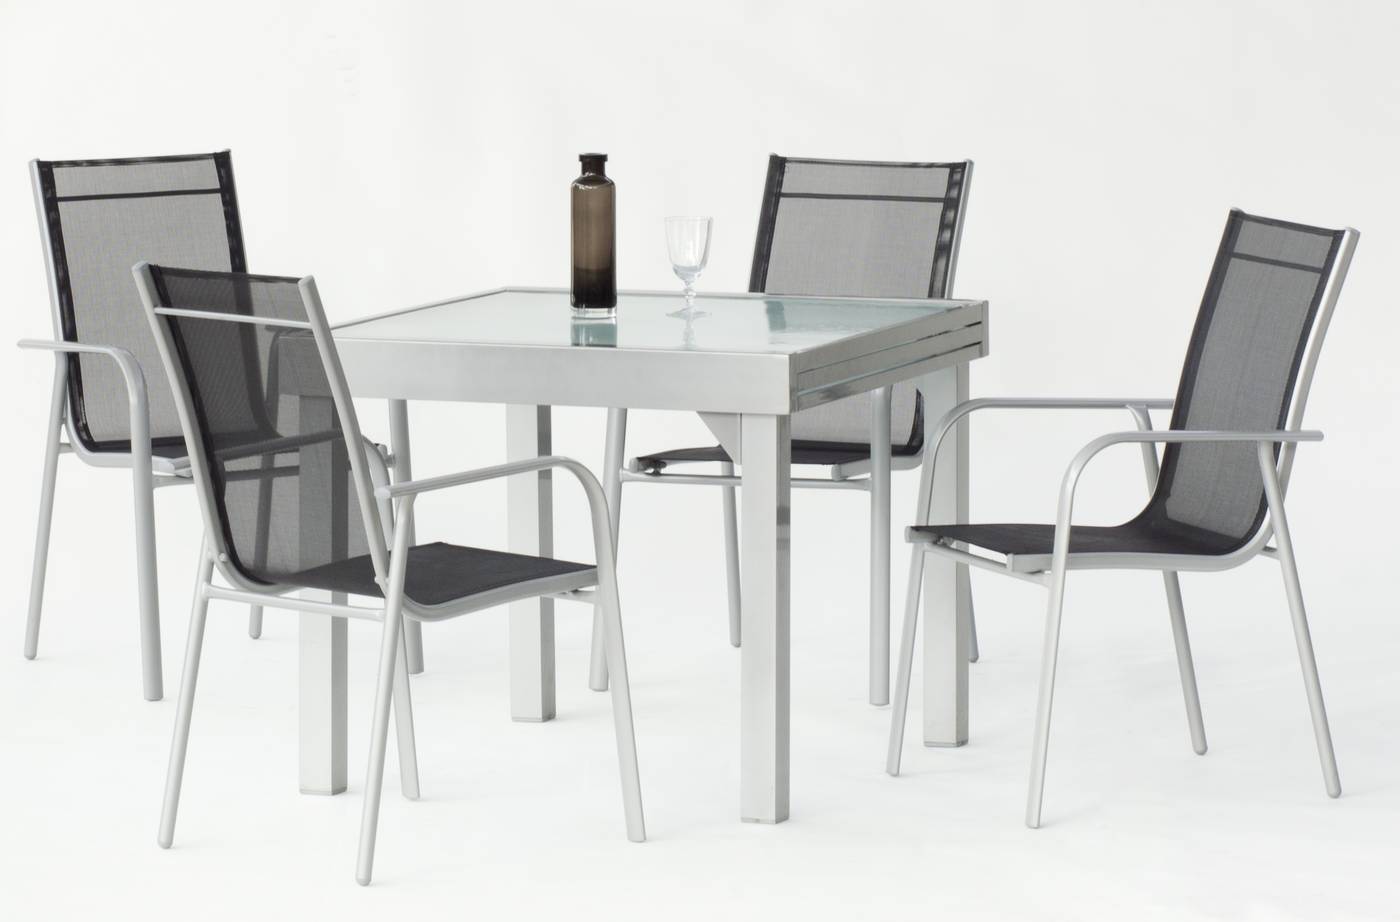 Conjunto aluminio color plata: mesa extensible y 4 sillones apilables